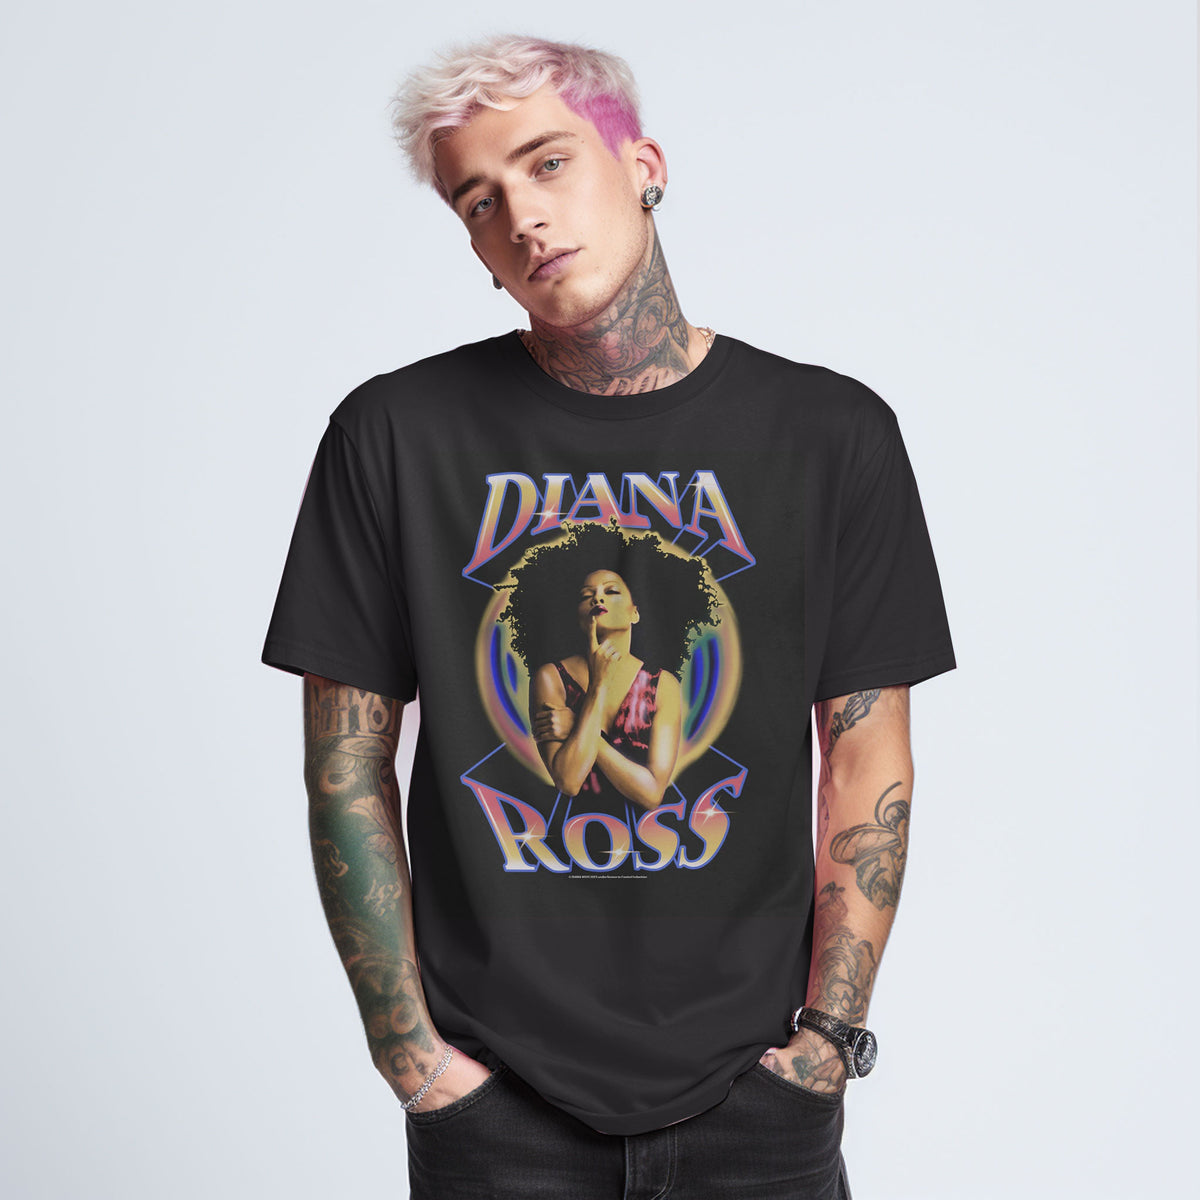 Diana Ross T-shirt 